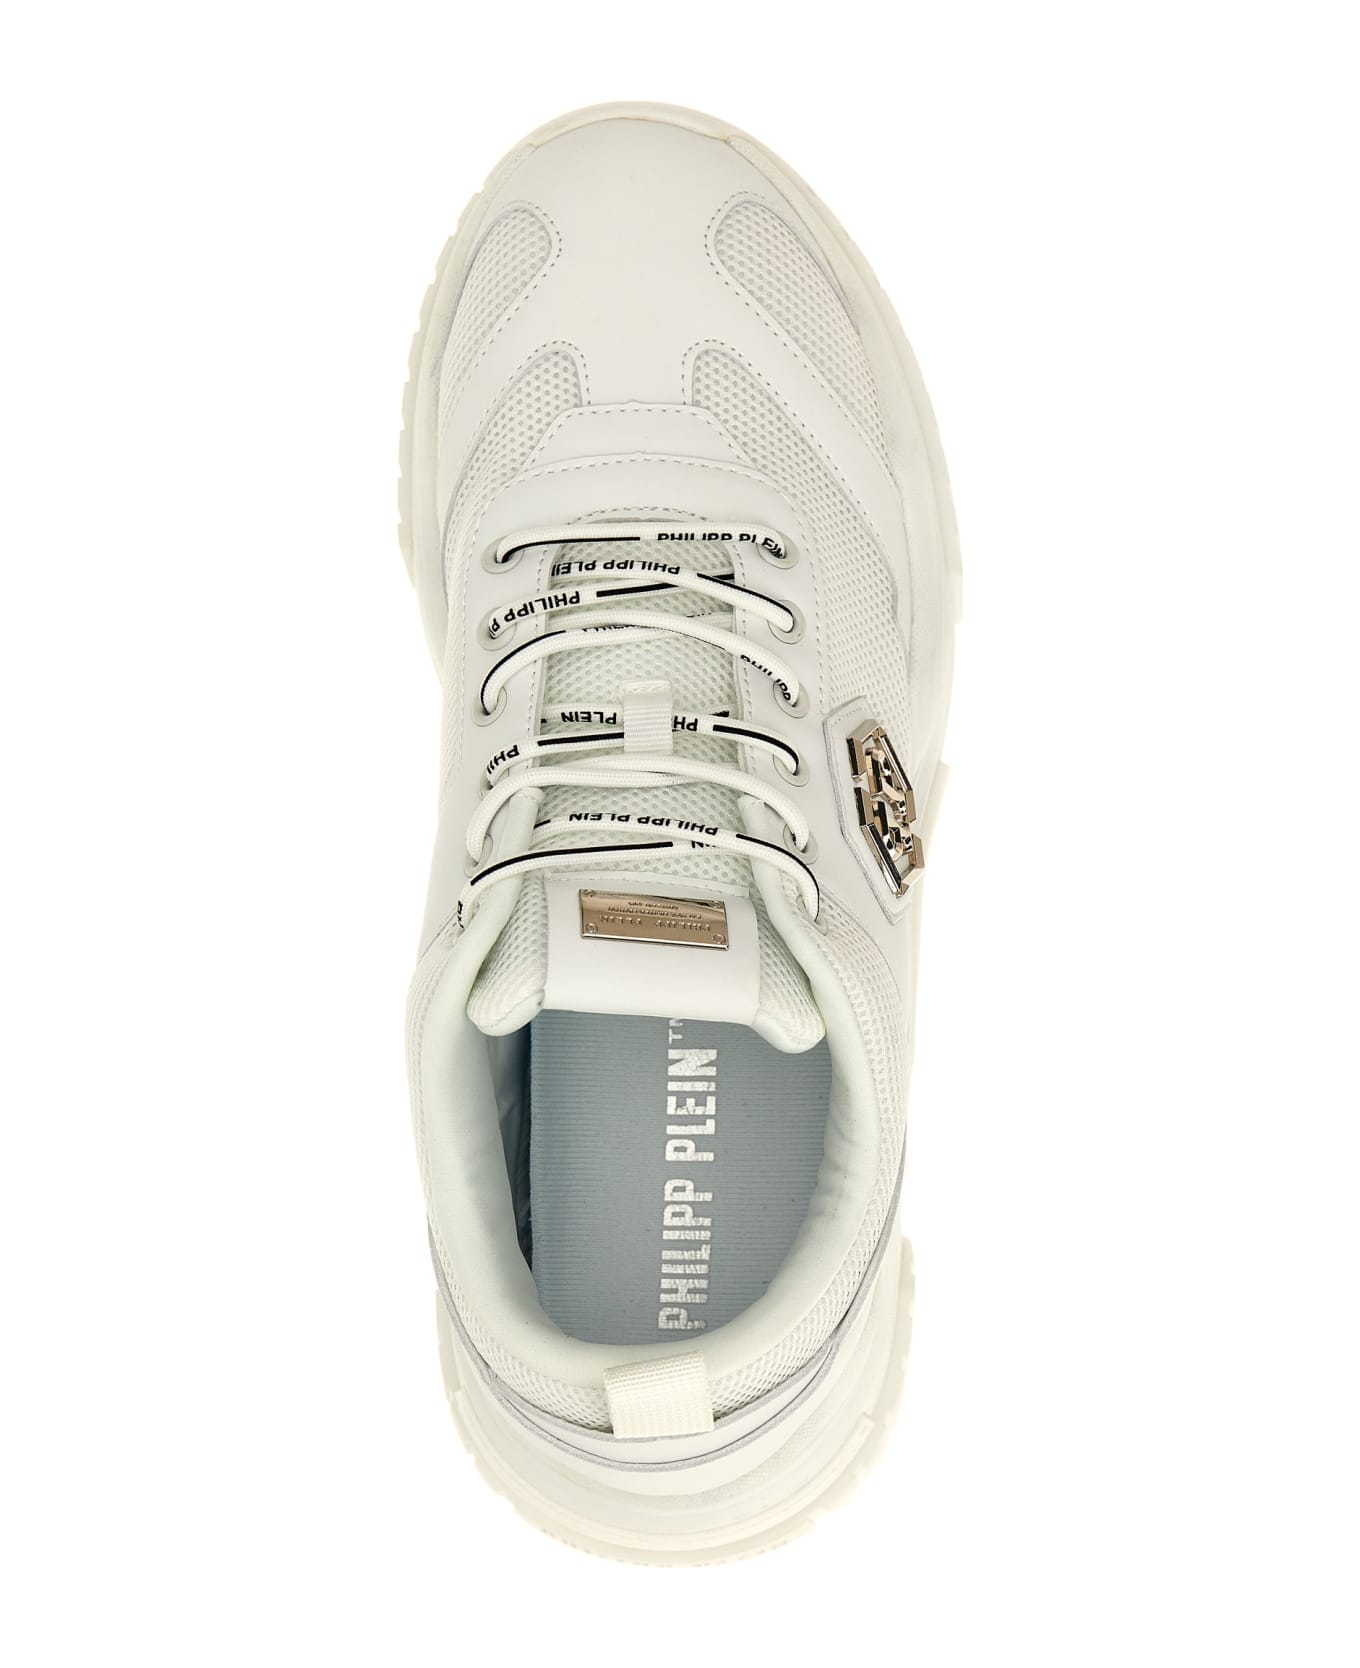 Philipp Plein 'predator' Sneakers - White